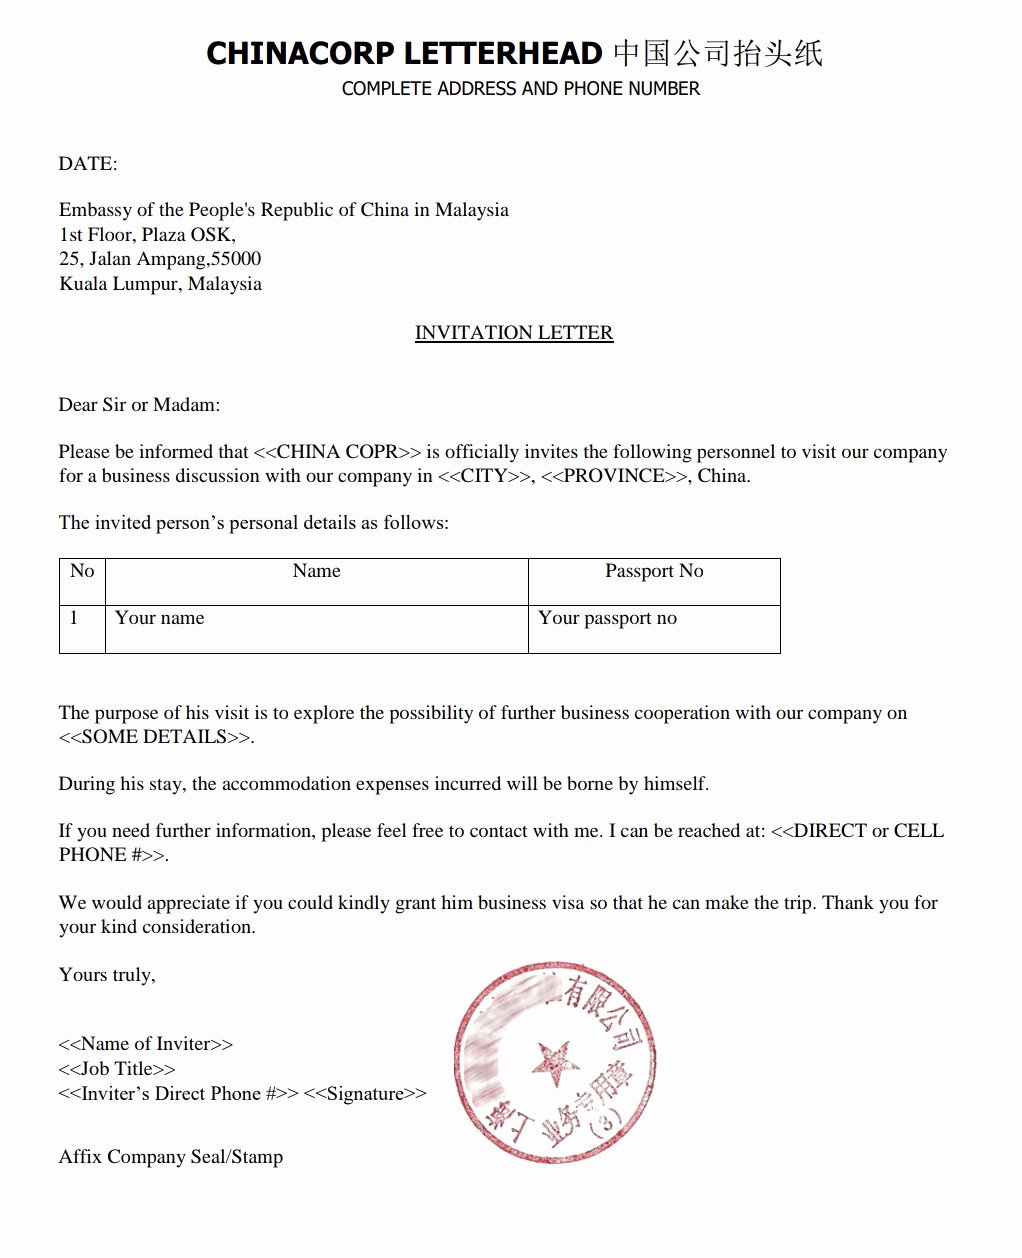 Visa Invitation Letter format New China Visa Sample Invitation Letter for Business Visa